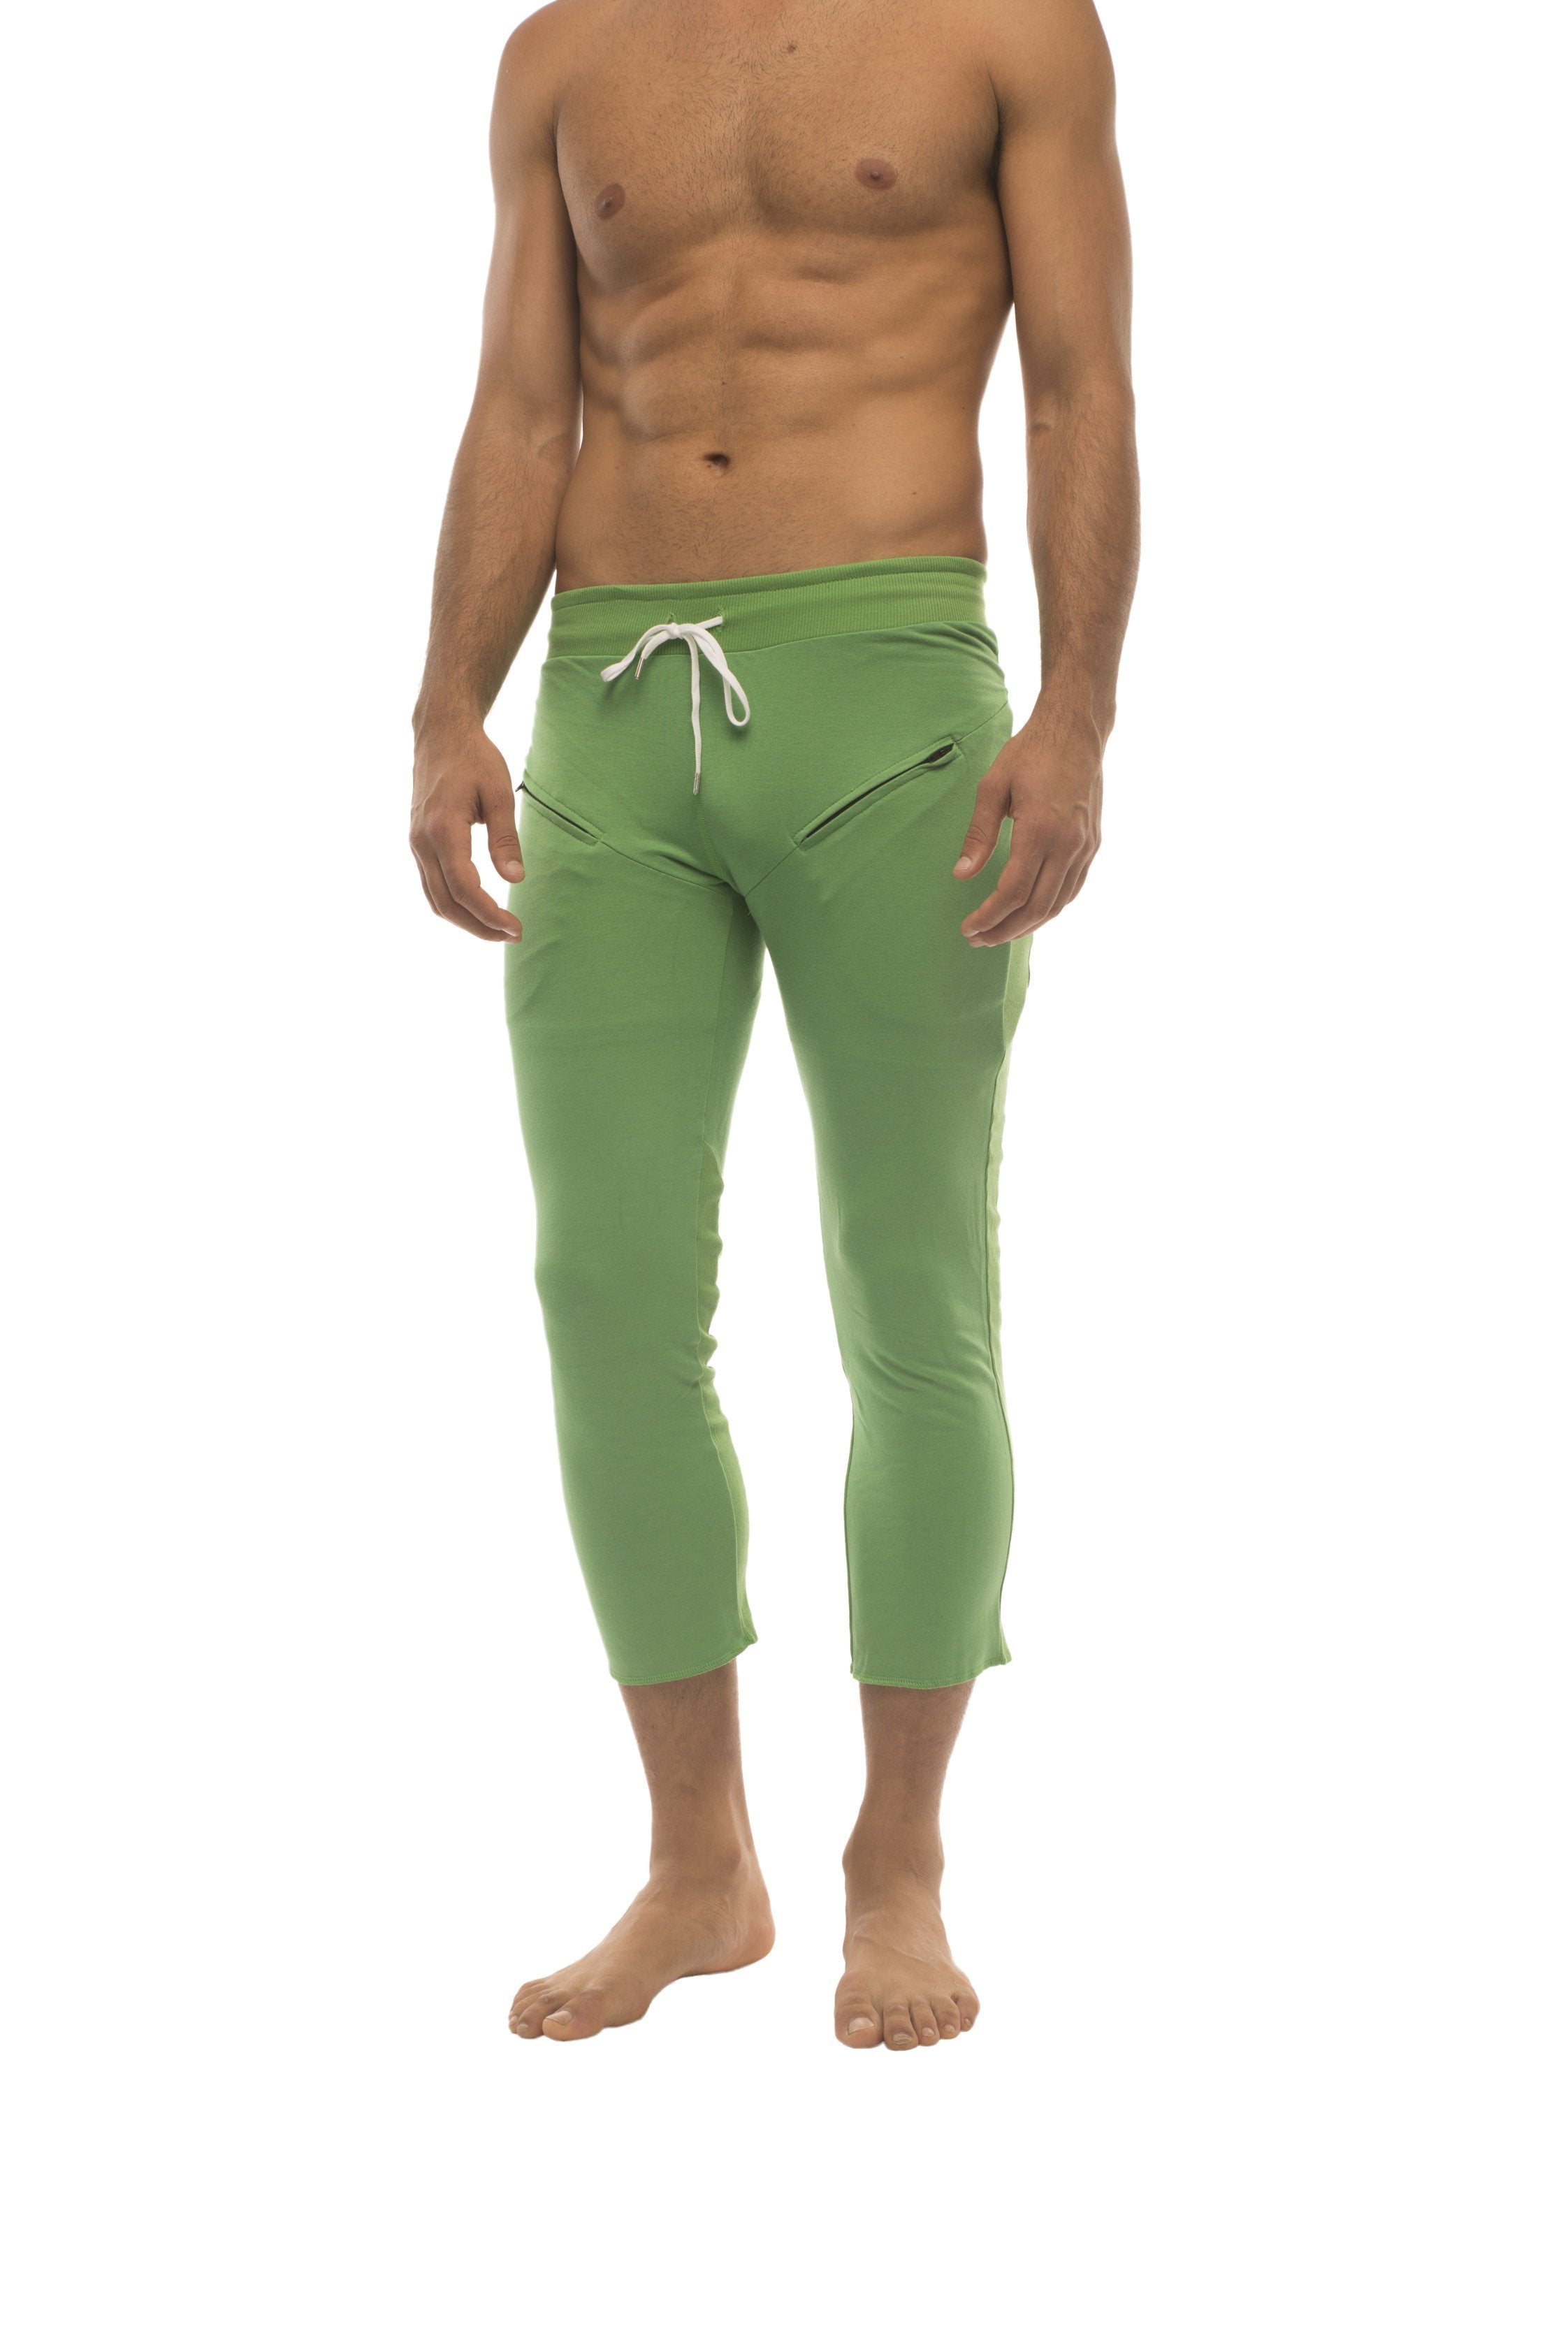 Mens 4/5 Zipper Pocket Capri Yoga Pants 